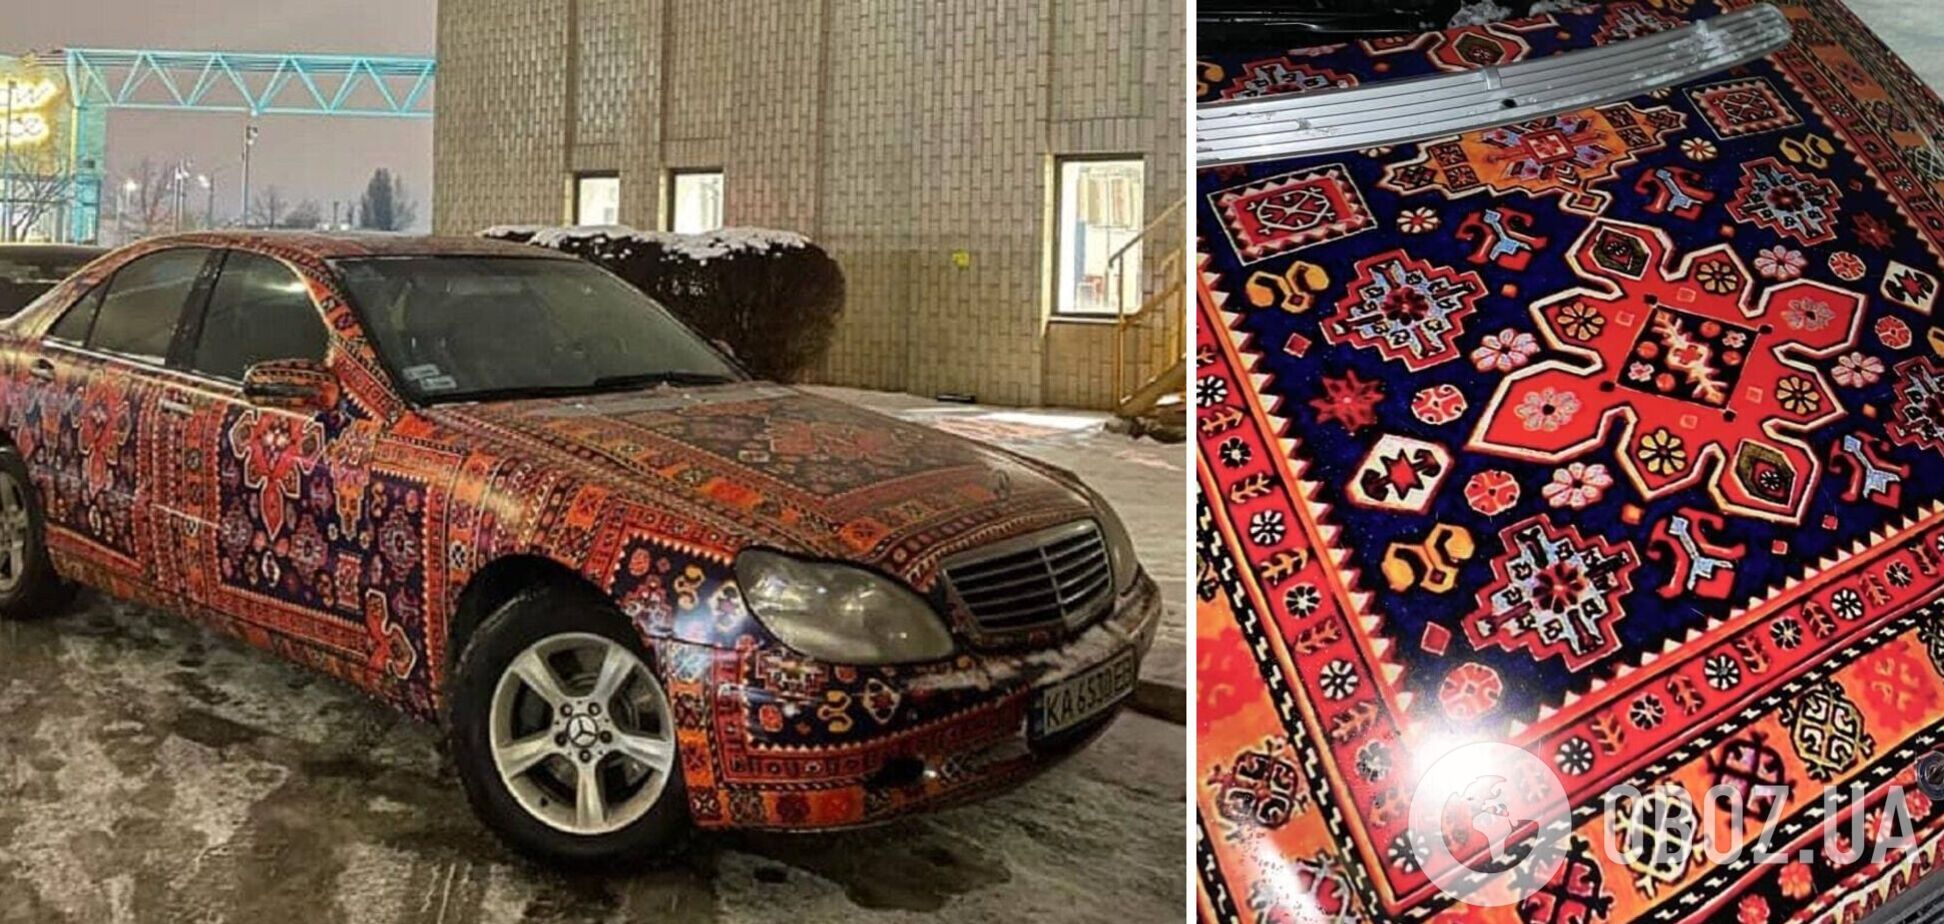 Раскраска авто похожа на ковер советской эпохи